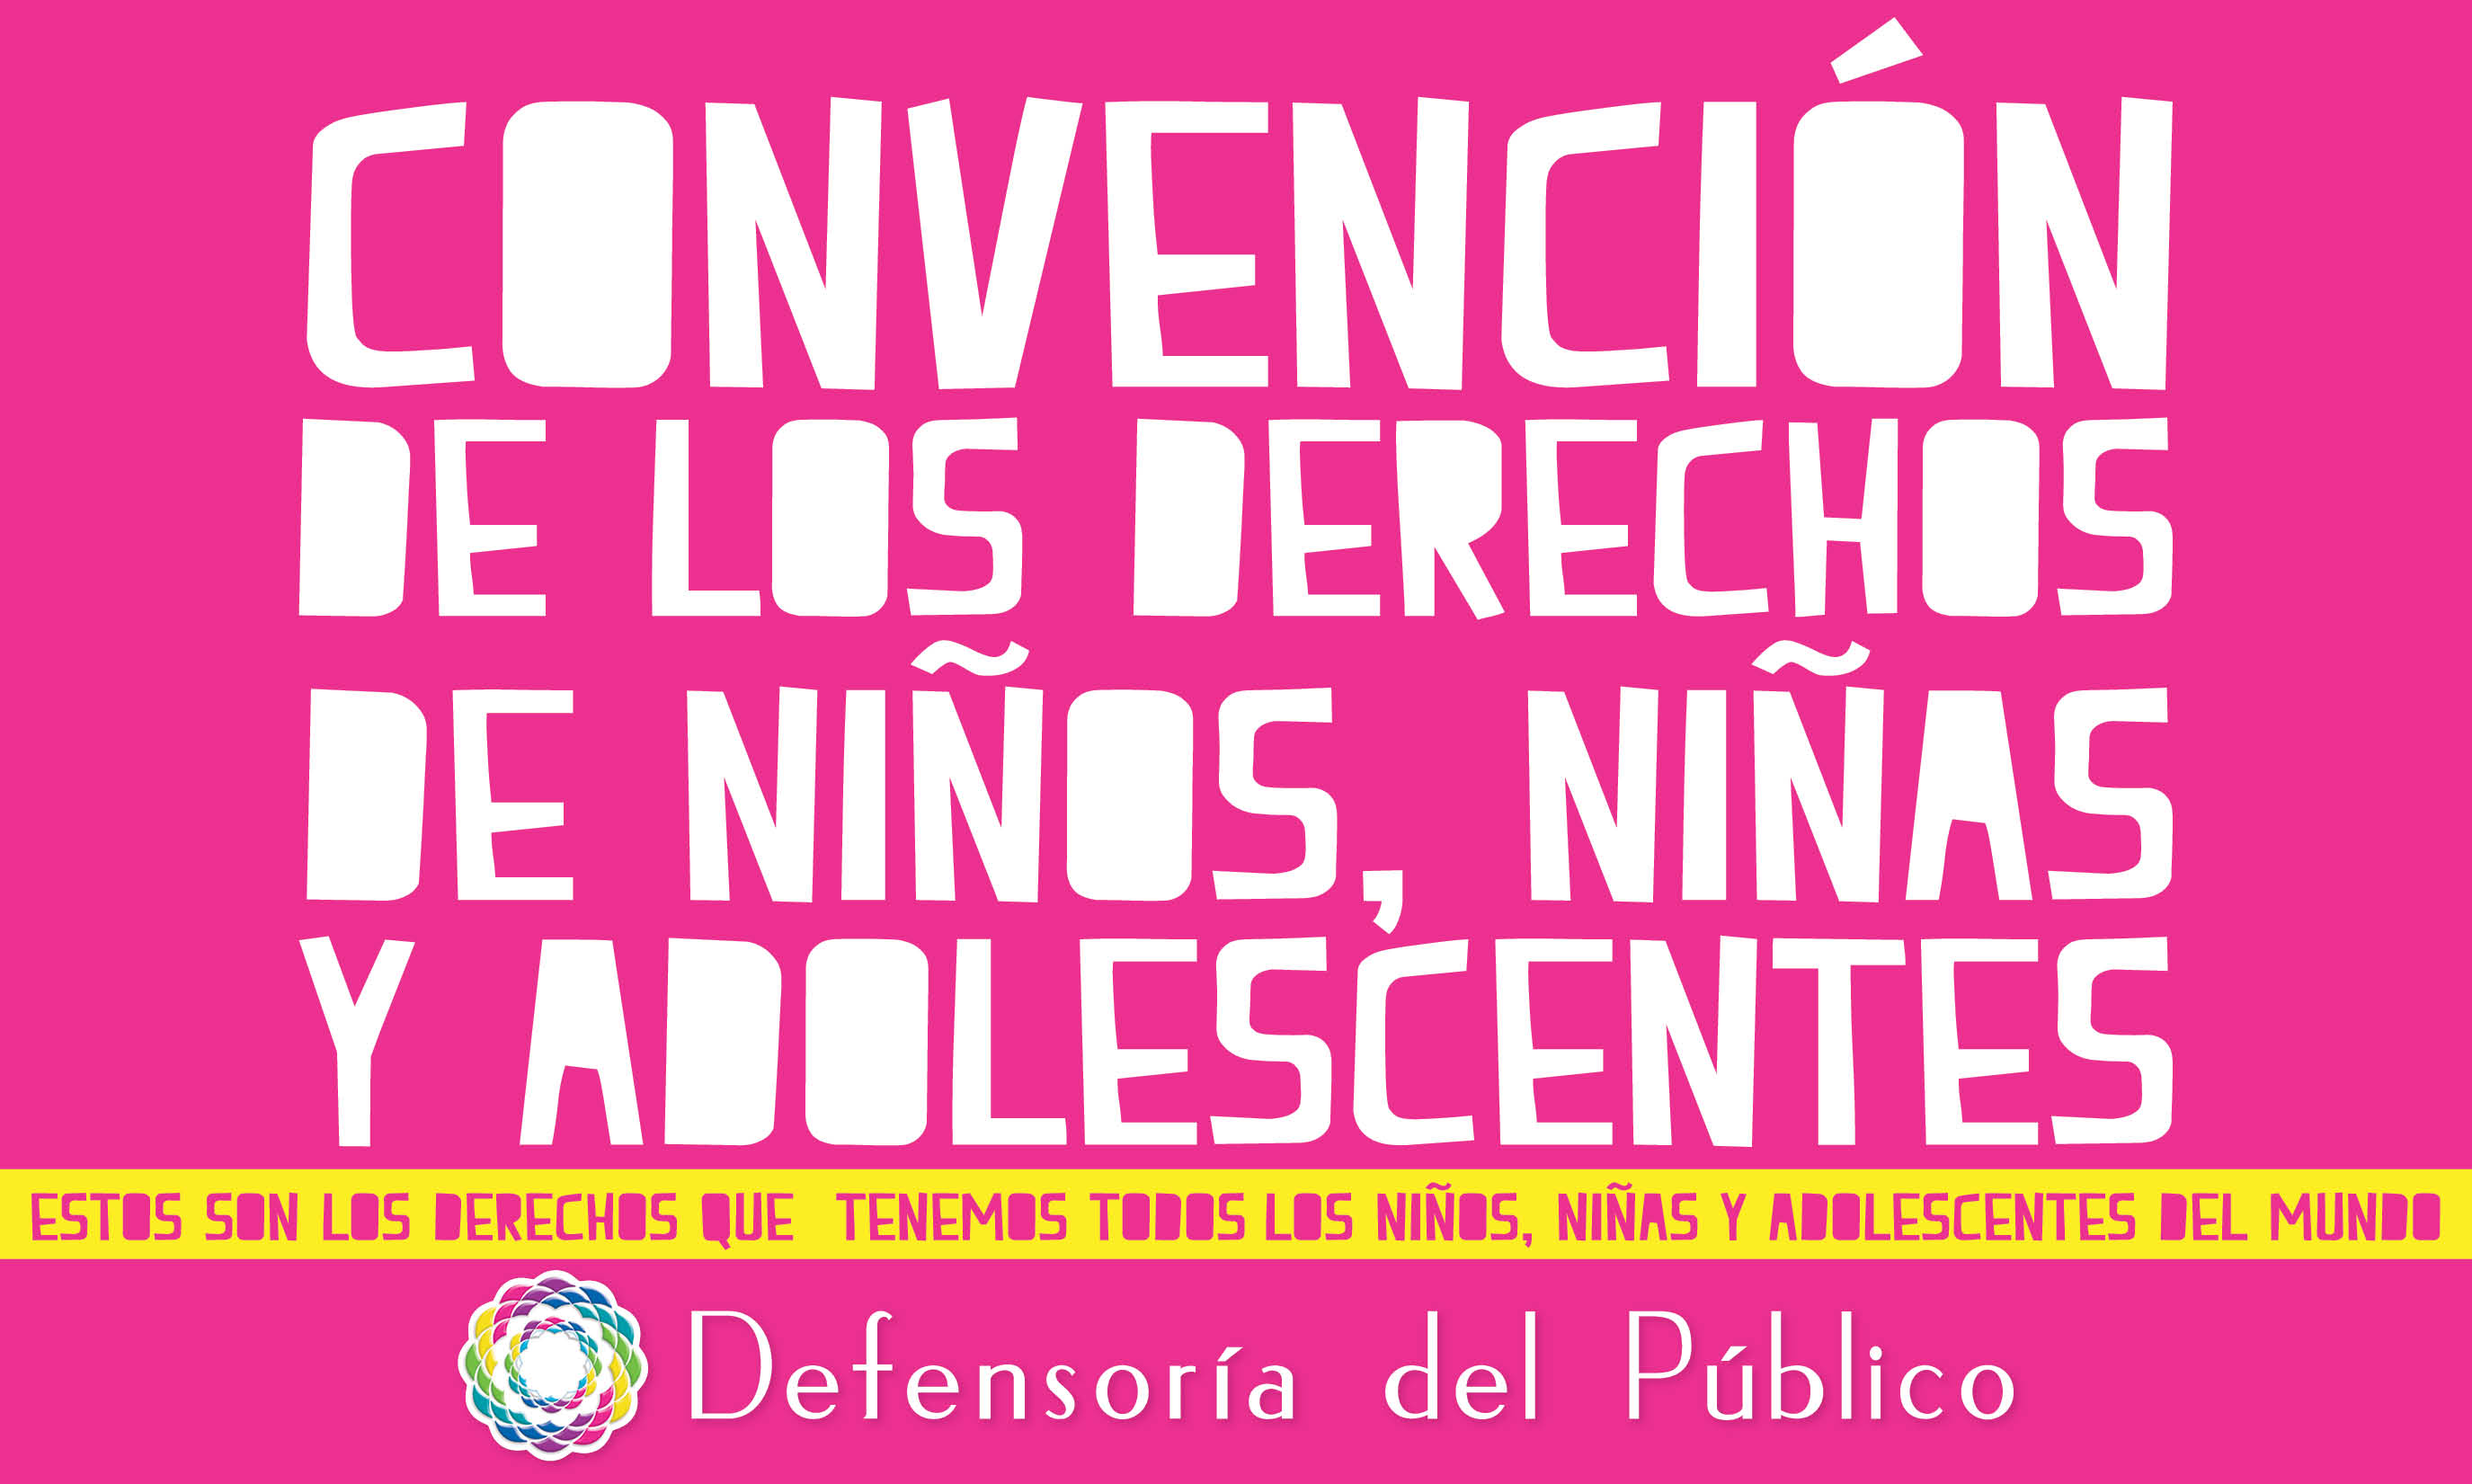 Imagenes De La Convencion Sobre Los Derechos Del Niño